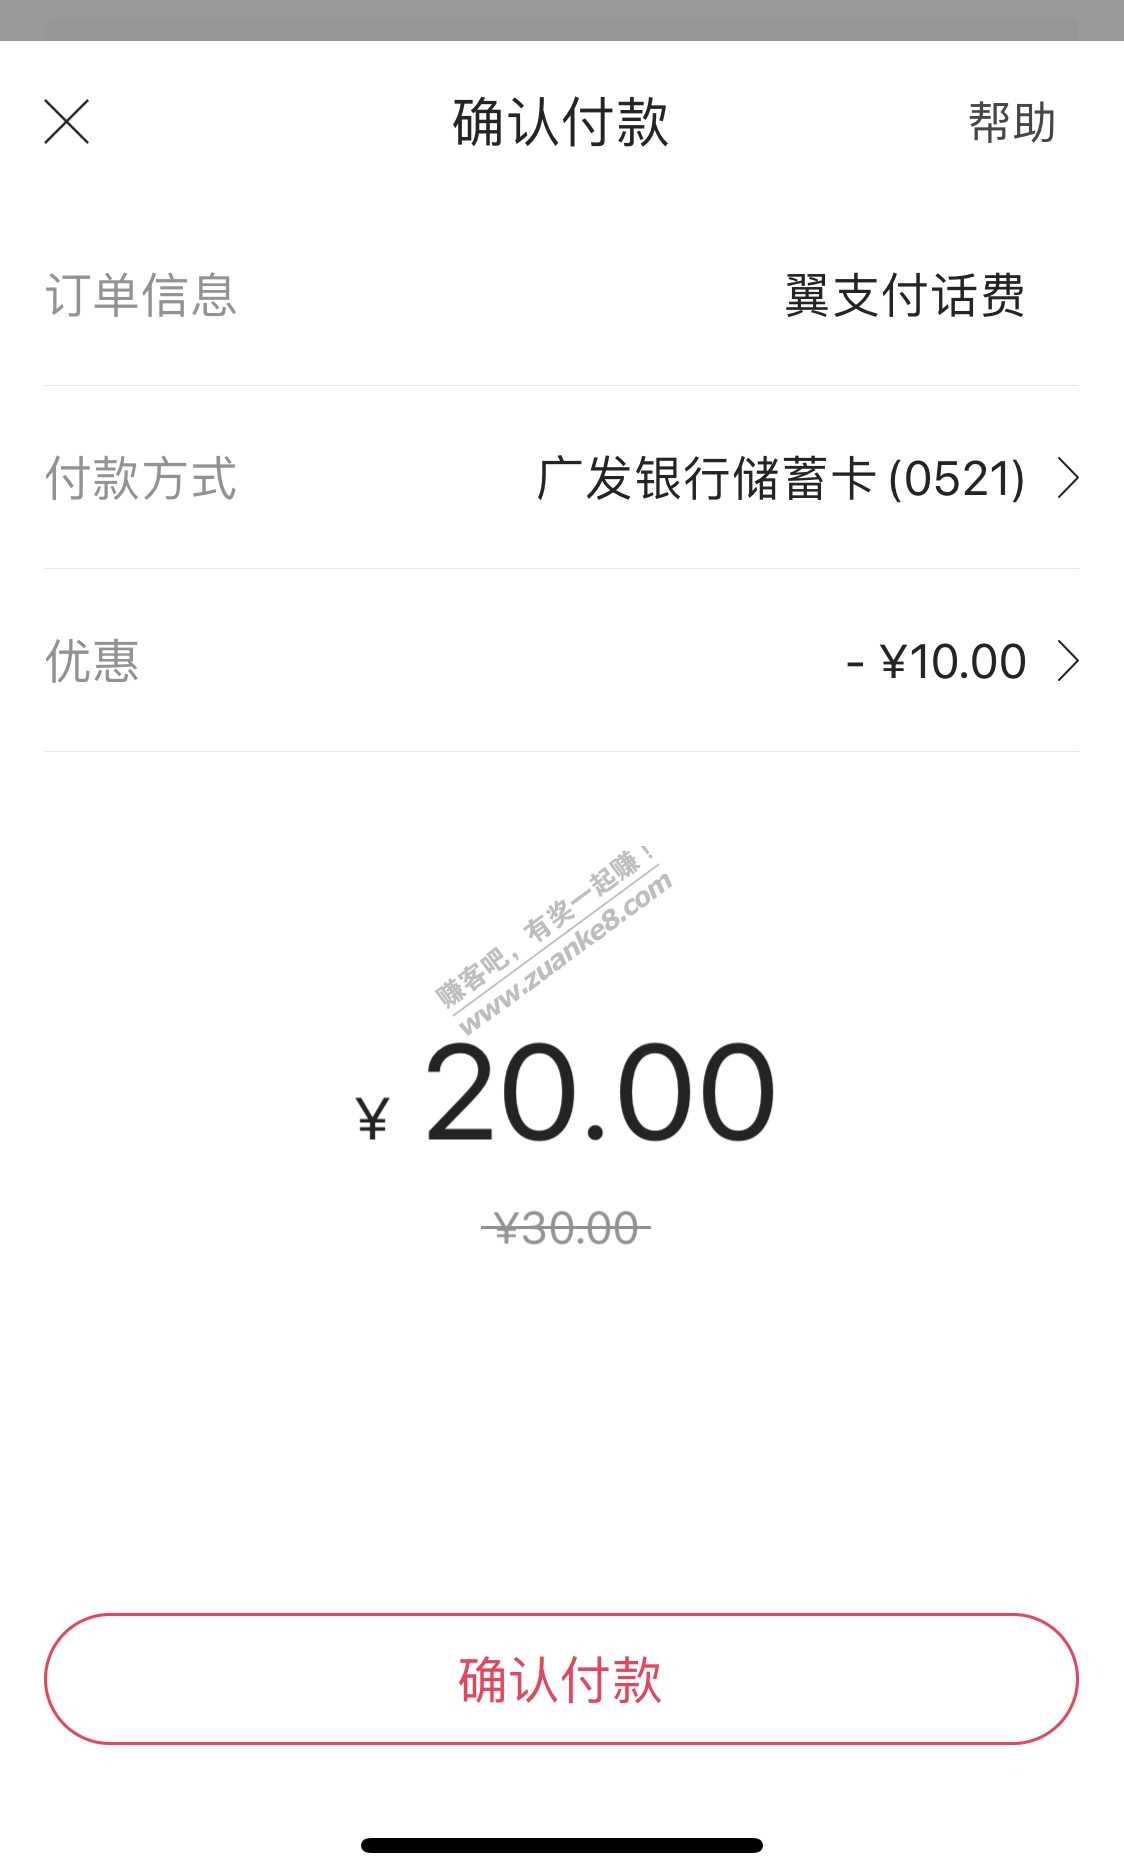 10元话费毛-北京翼支付充30话费用广发卡付款减10-惠小助(52huixz.com)